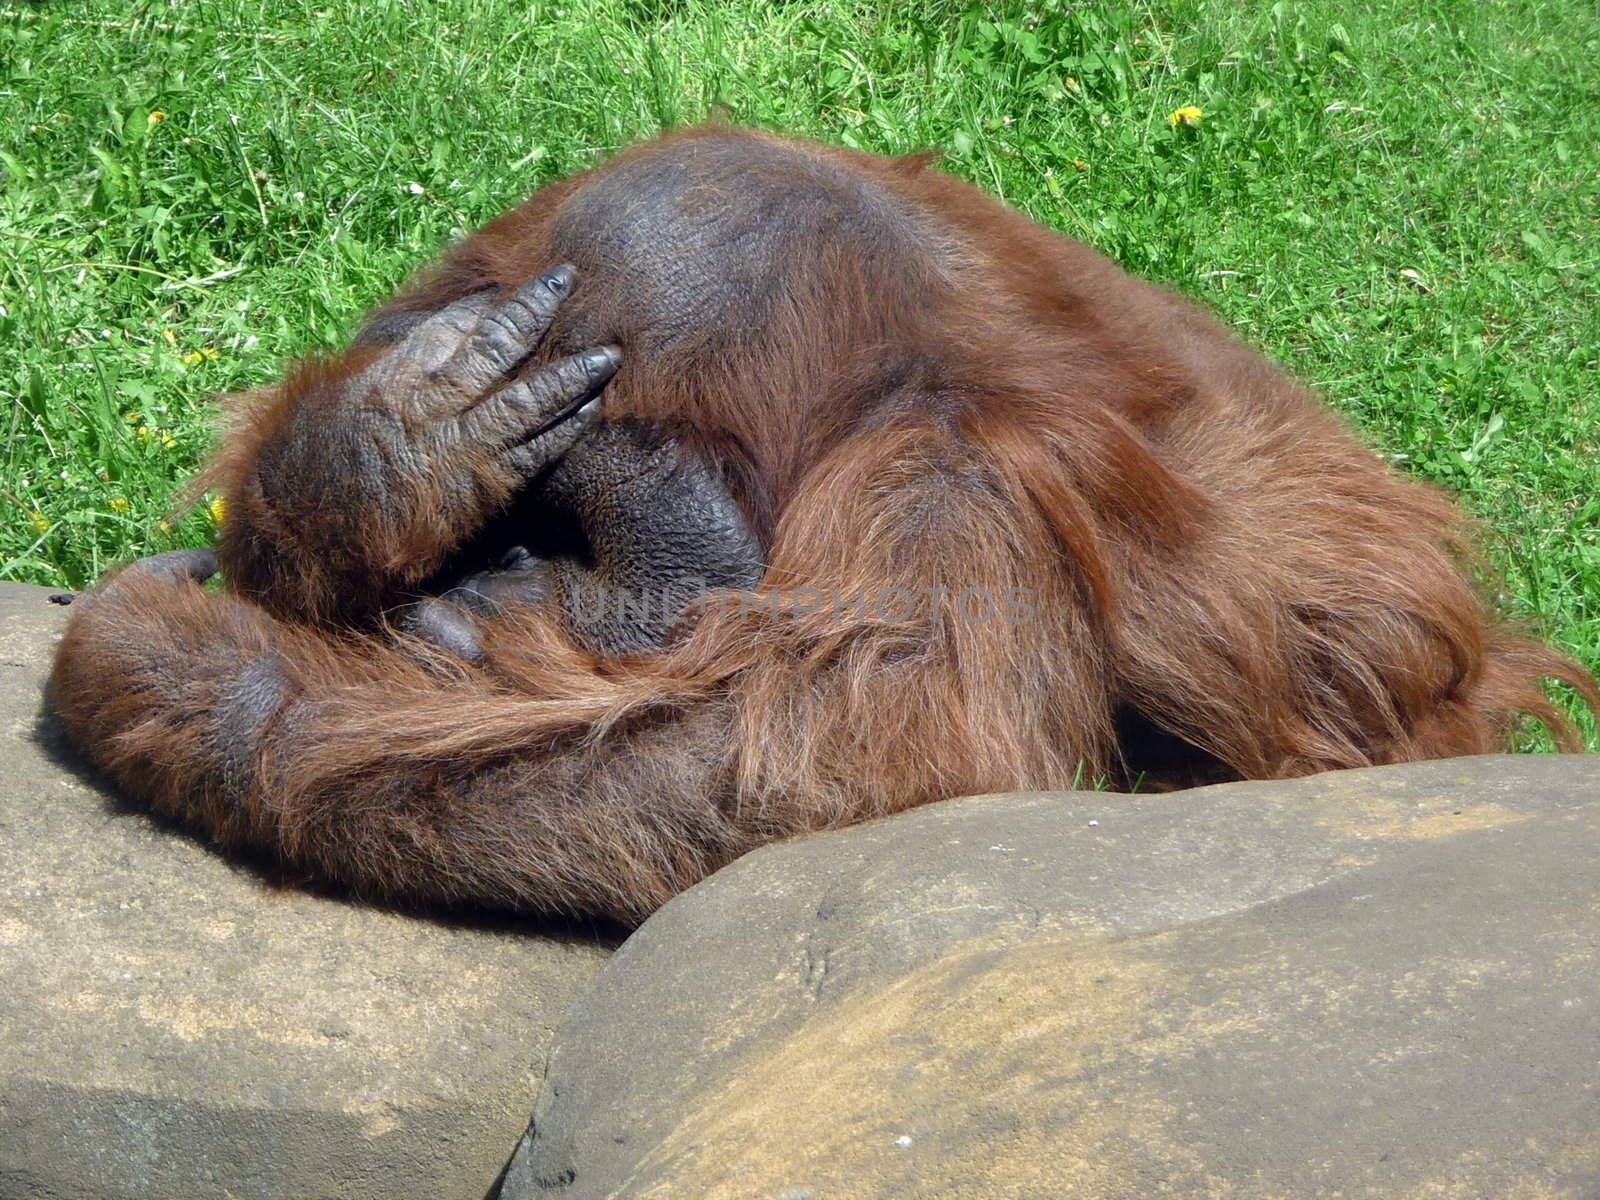 Thinking orangutan by tomatto